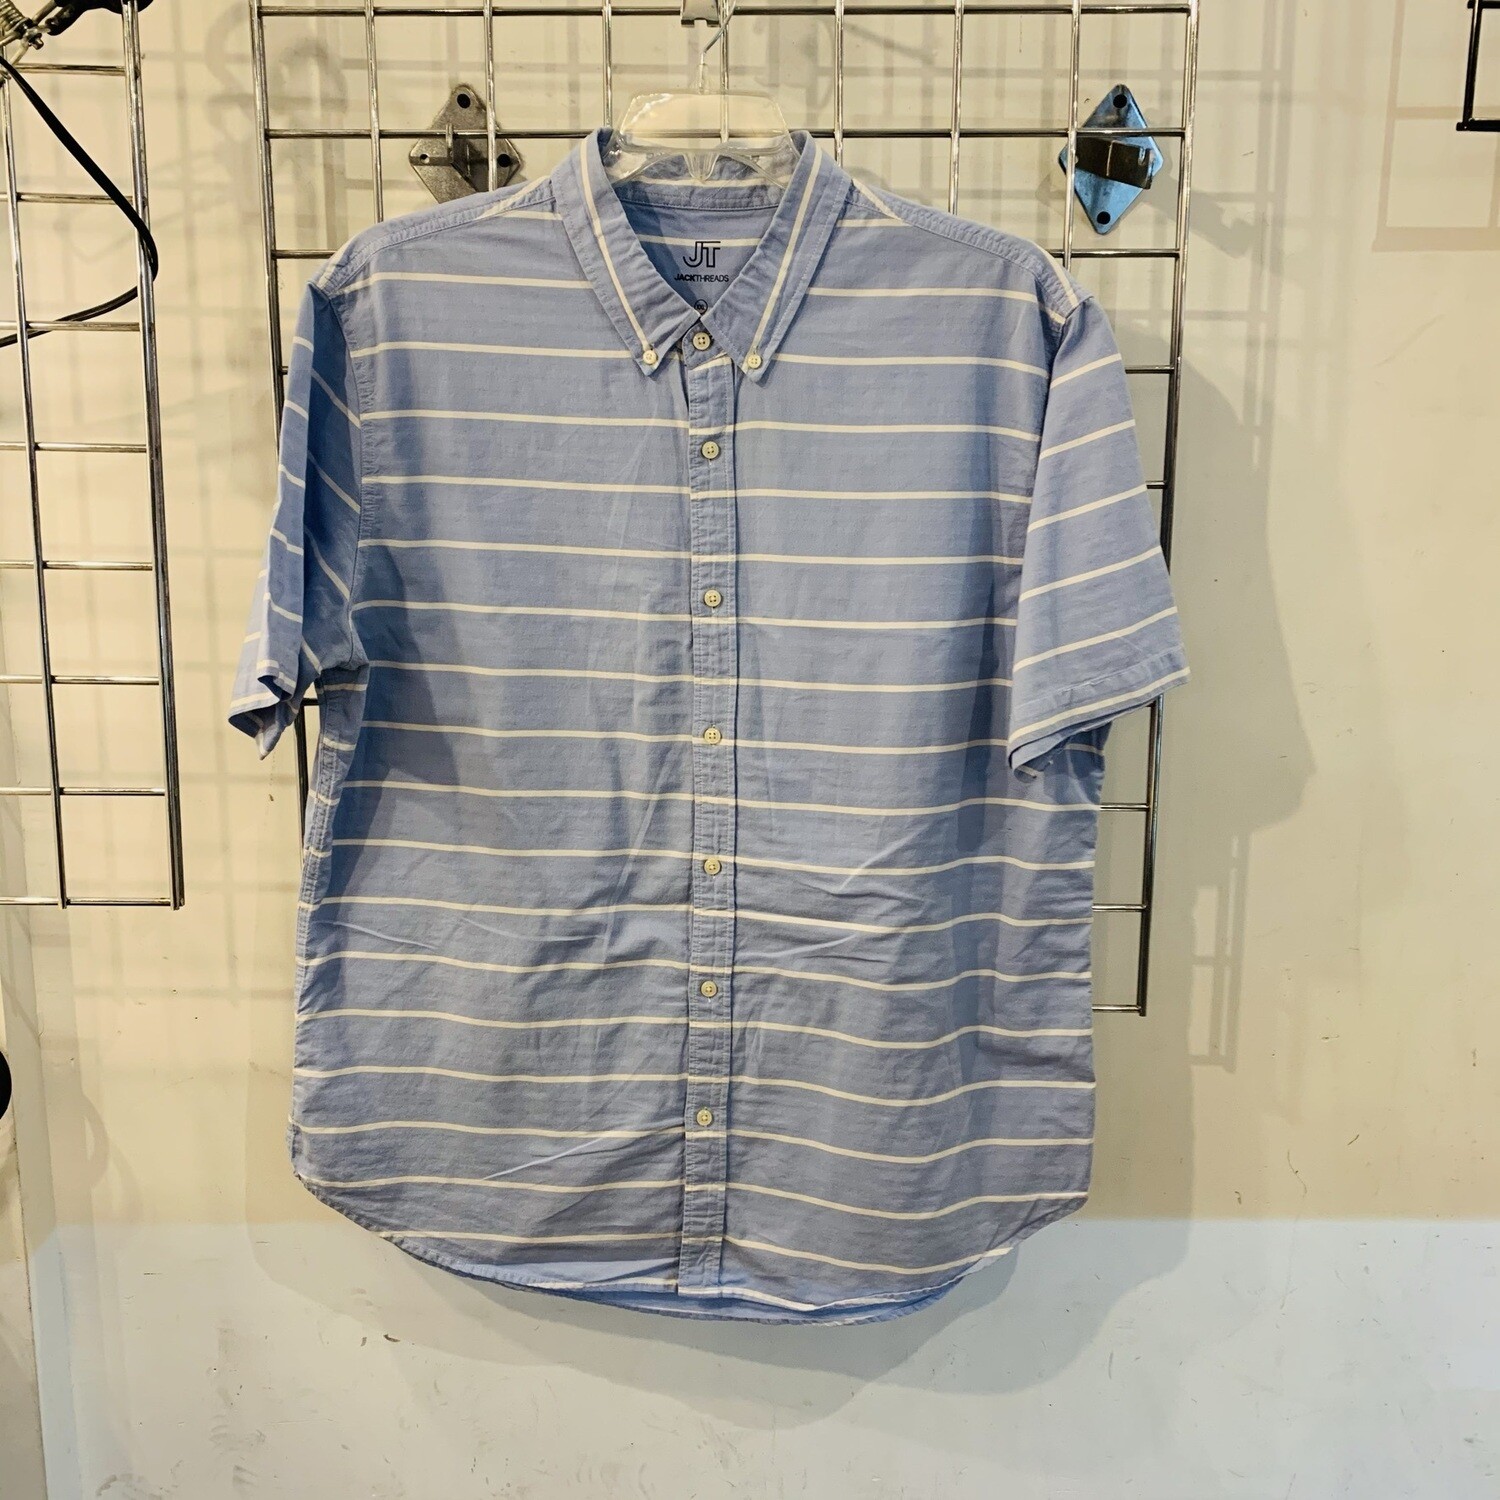 Size XXL Jack Threads Short-Sleeve Button Down Shirt